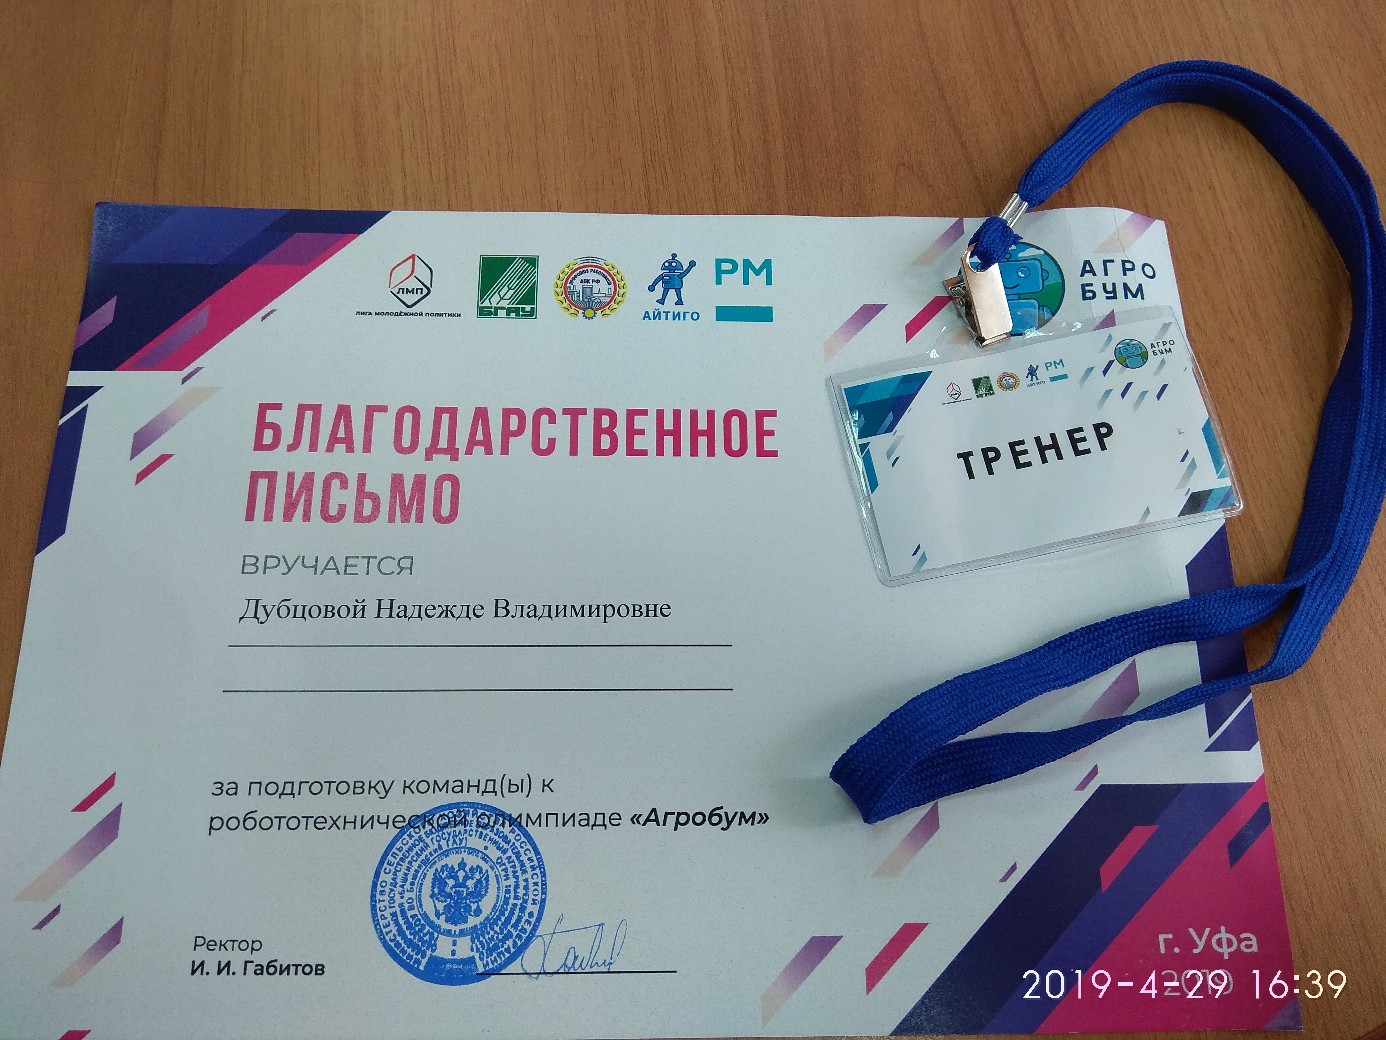 Олимпиада «Агробум». Челябинская команда делится опытом участия в проекте